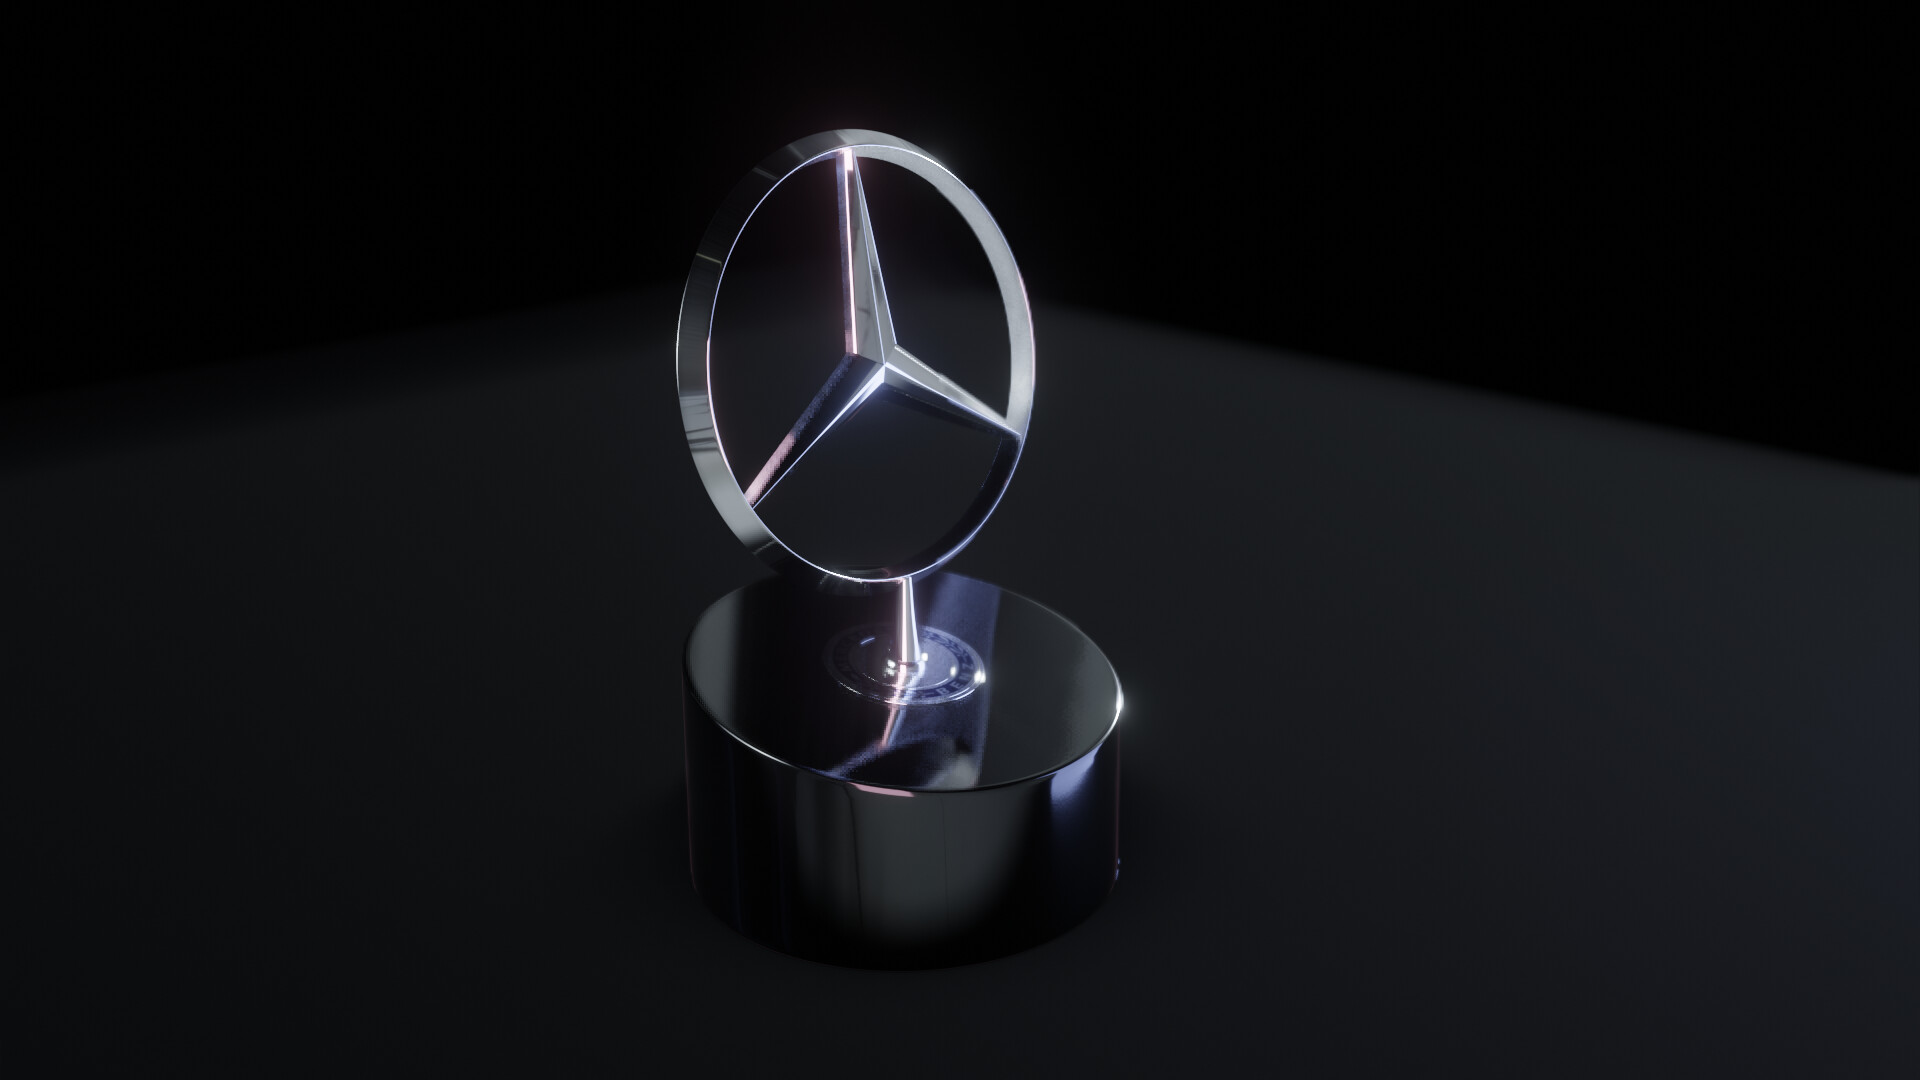 ArtStation - Mercedes-Benz Emblem Paper Weight